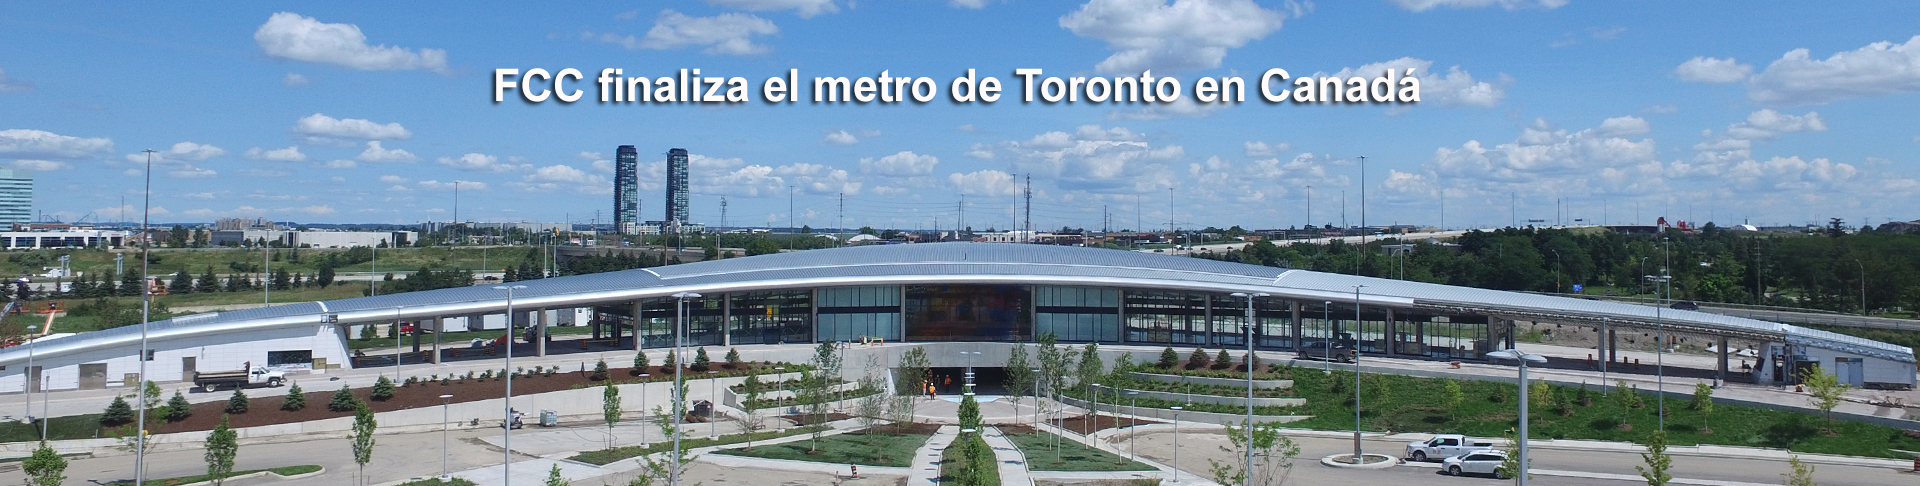 FCC y OHL obtienen el certificado “Substantial Performance” en el proyecto: ampliación del Metro de Toronto-York Spadina, en Canadá